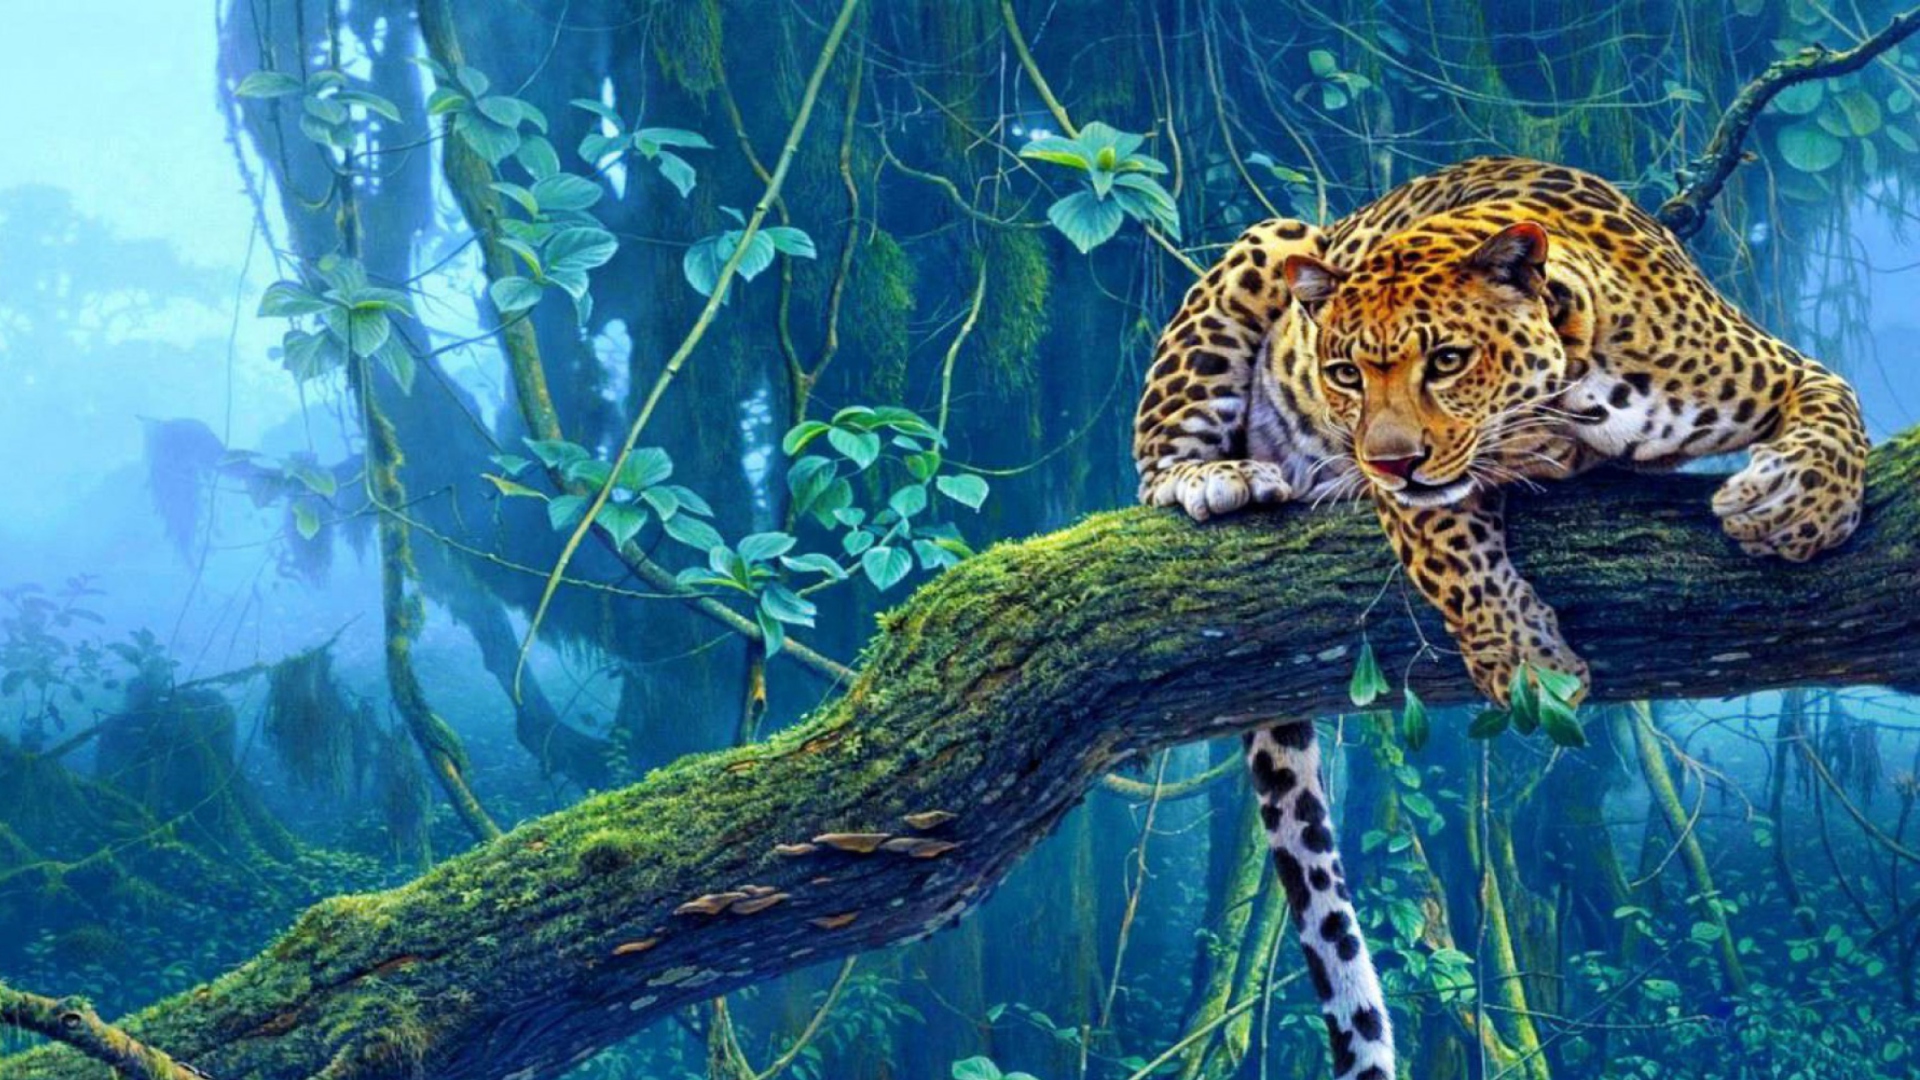 imagenes hd wallpaper,vertebrate,terrestrial animal,wildlife,leopard,felidae